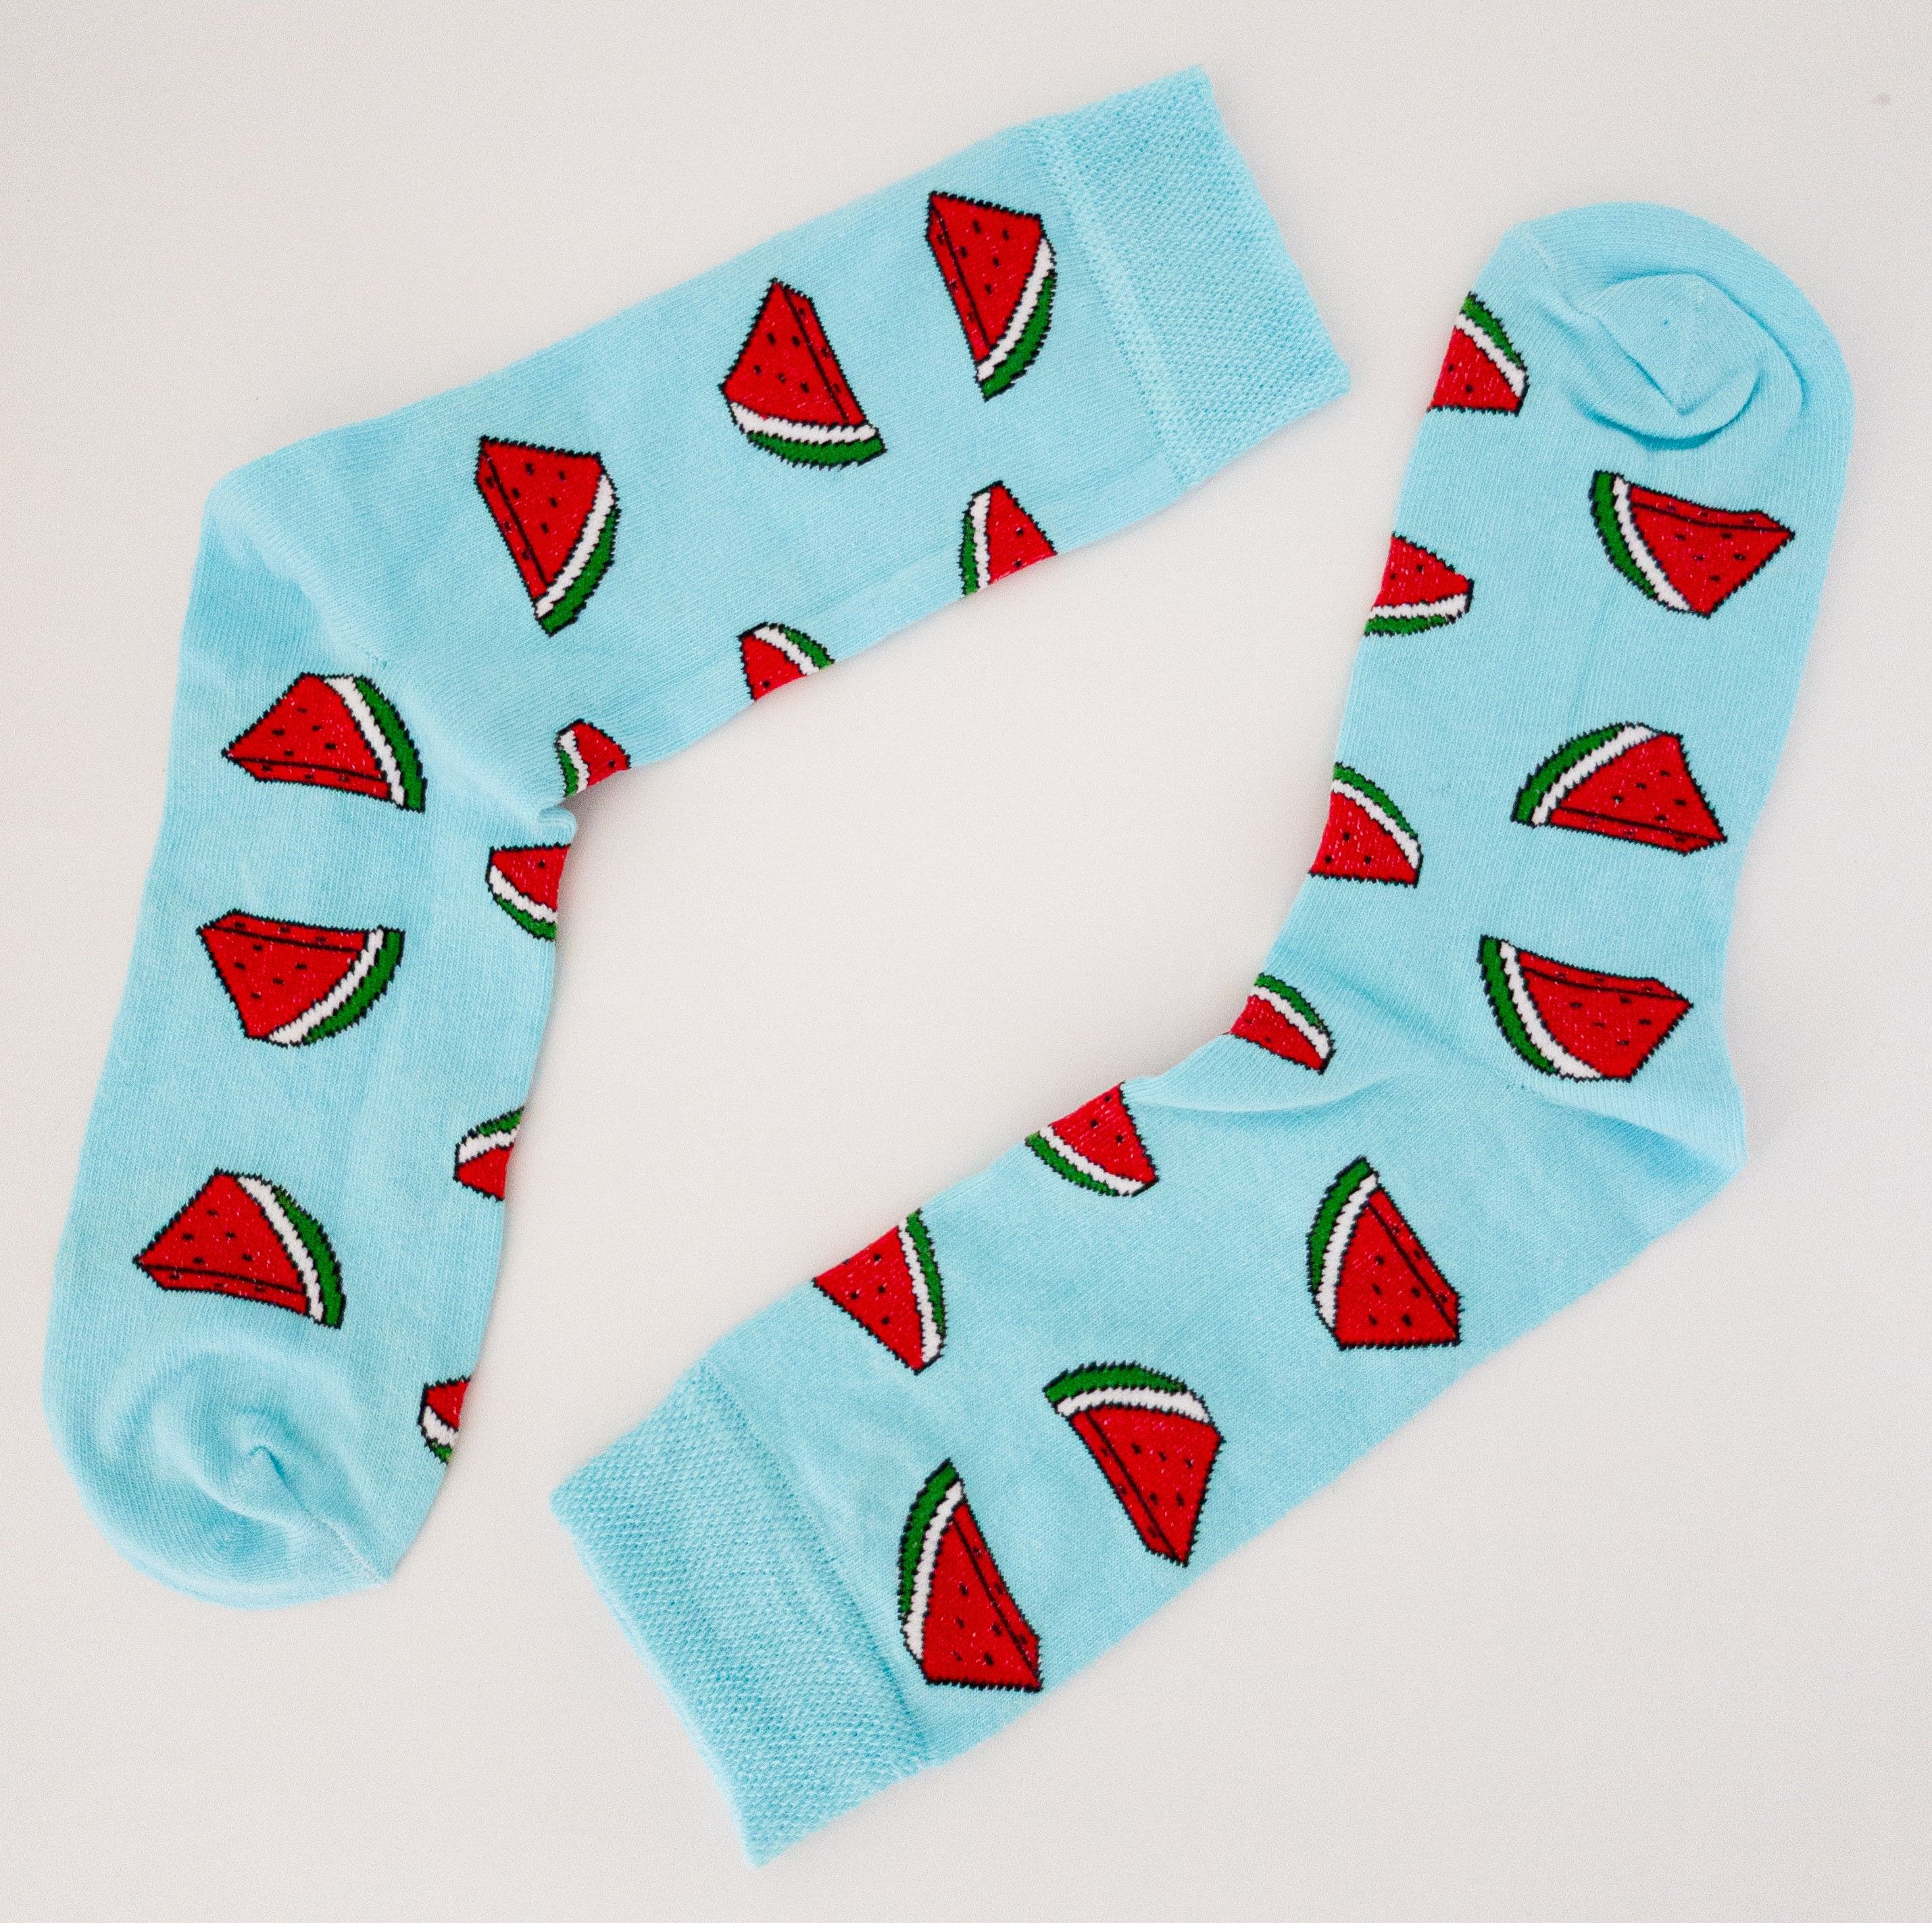 Wassermelone Socken